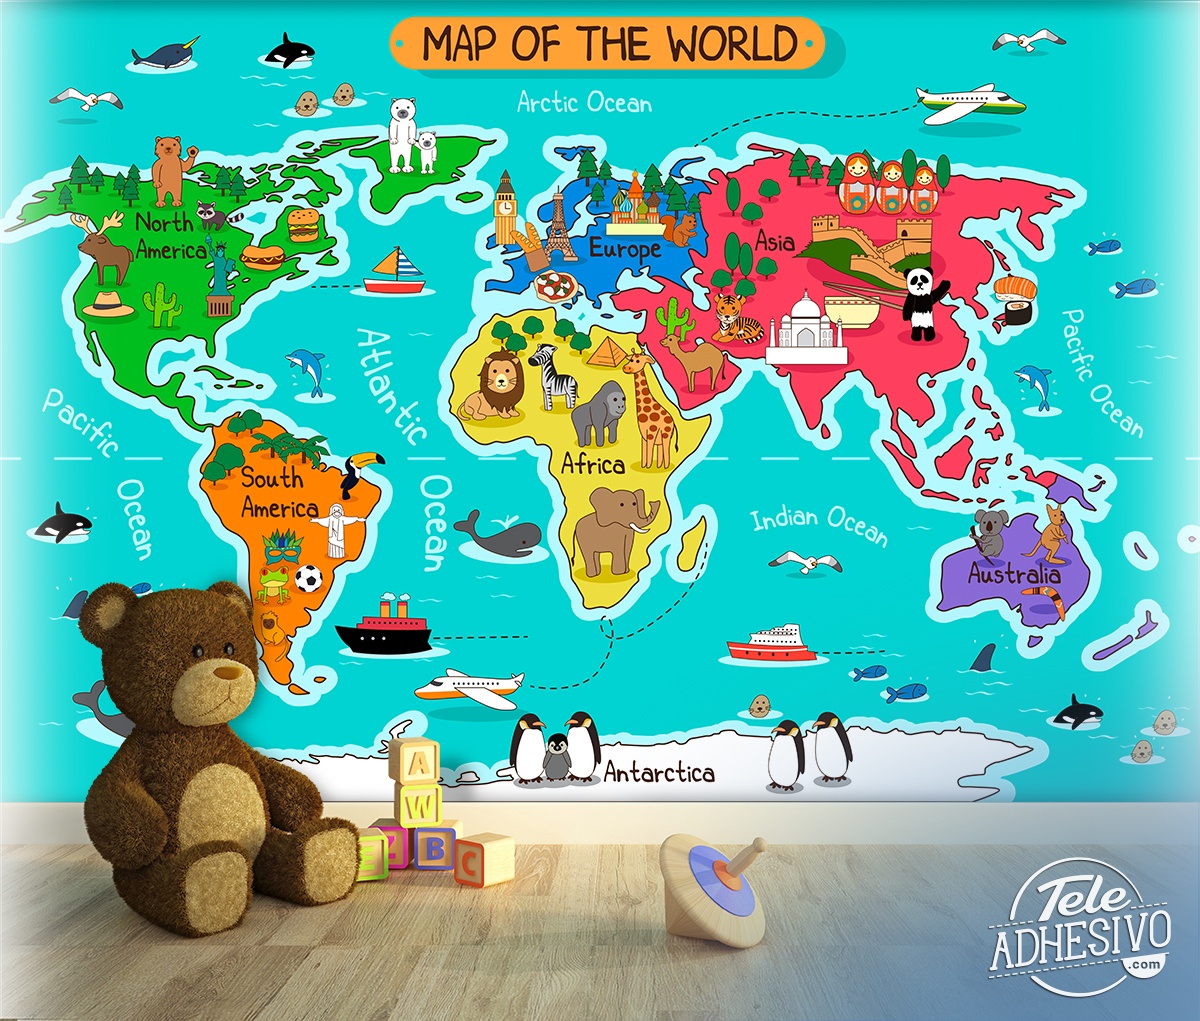 Poster XXL carte du monde pour enfants avec drapeaux et avions